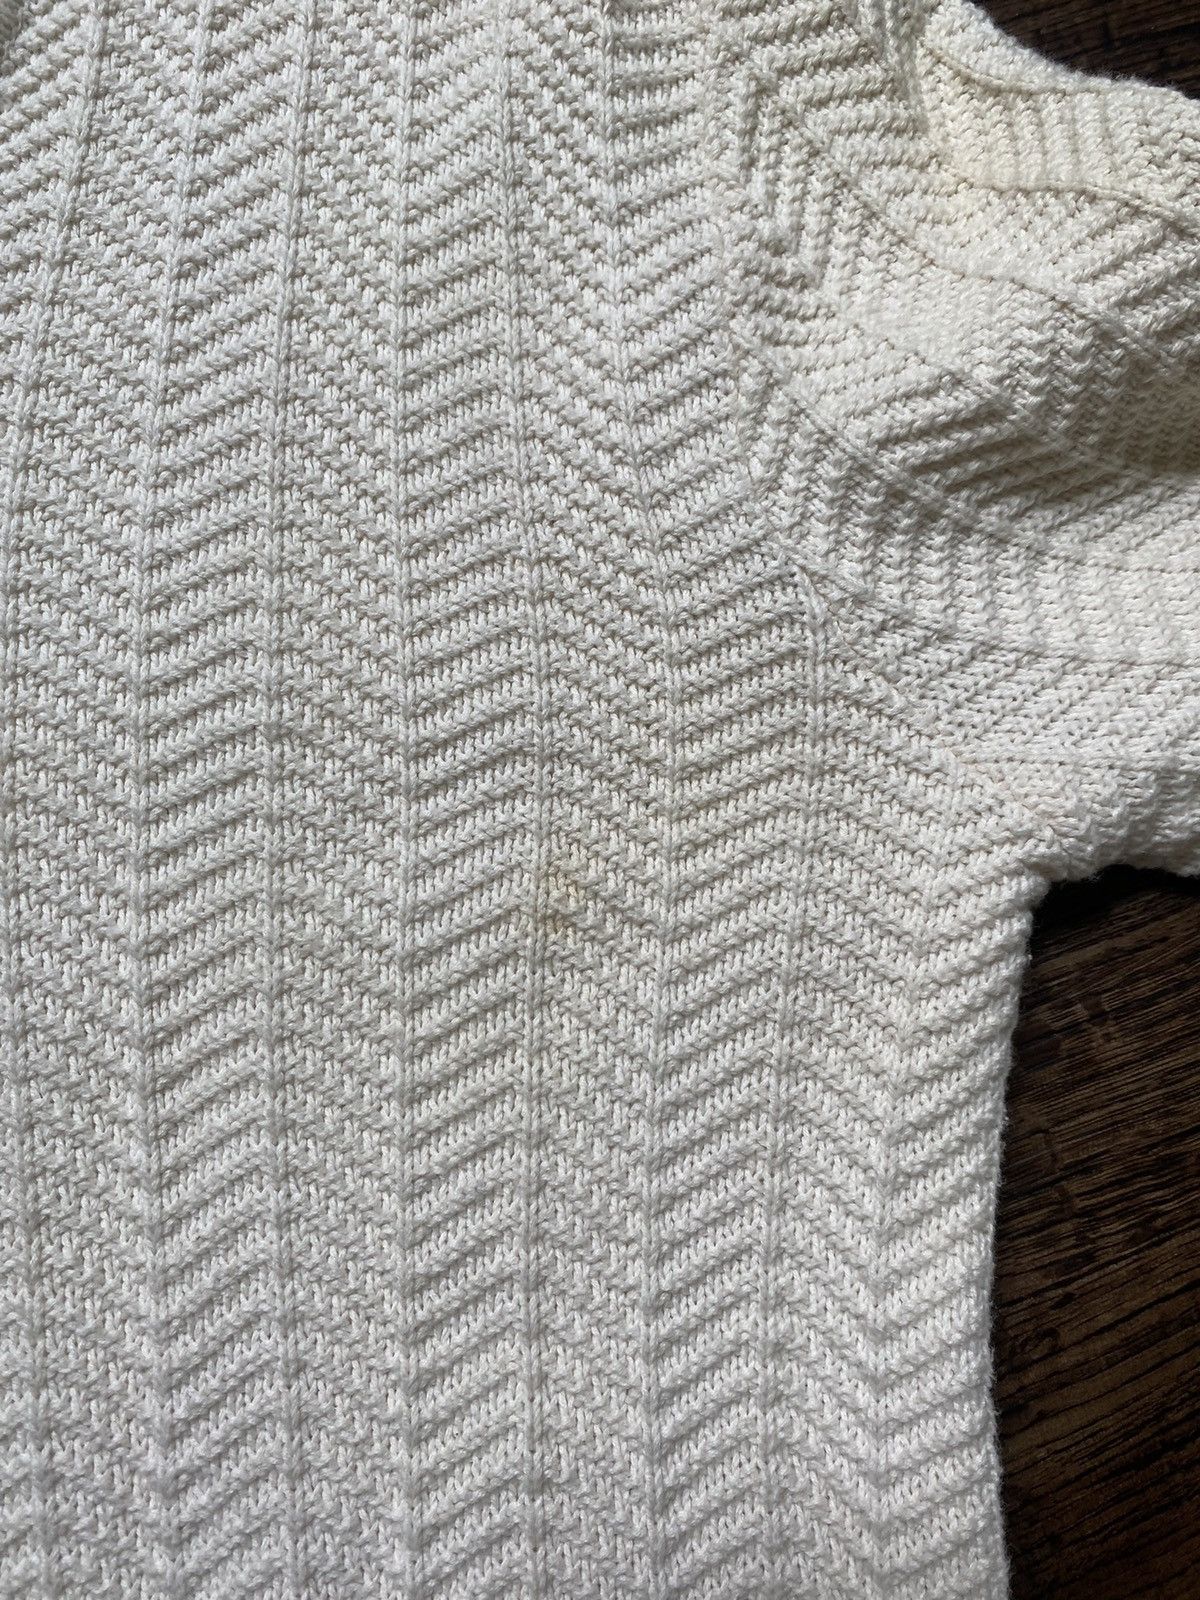 Vintage Vintage 60s Lacoste Knit Sweatshirt Size US M / EU 48-50 / 2 - 4 Thumbnail